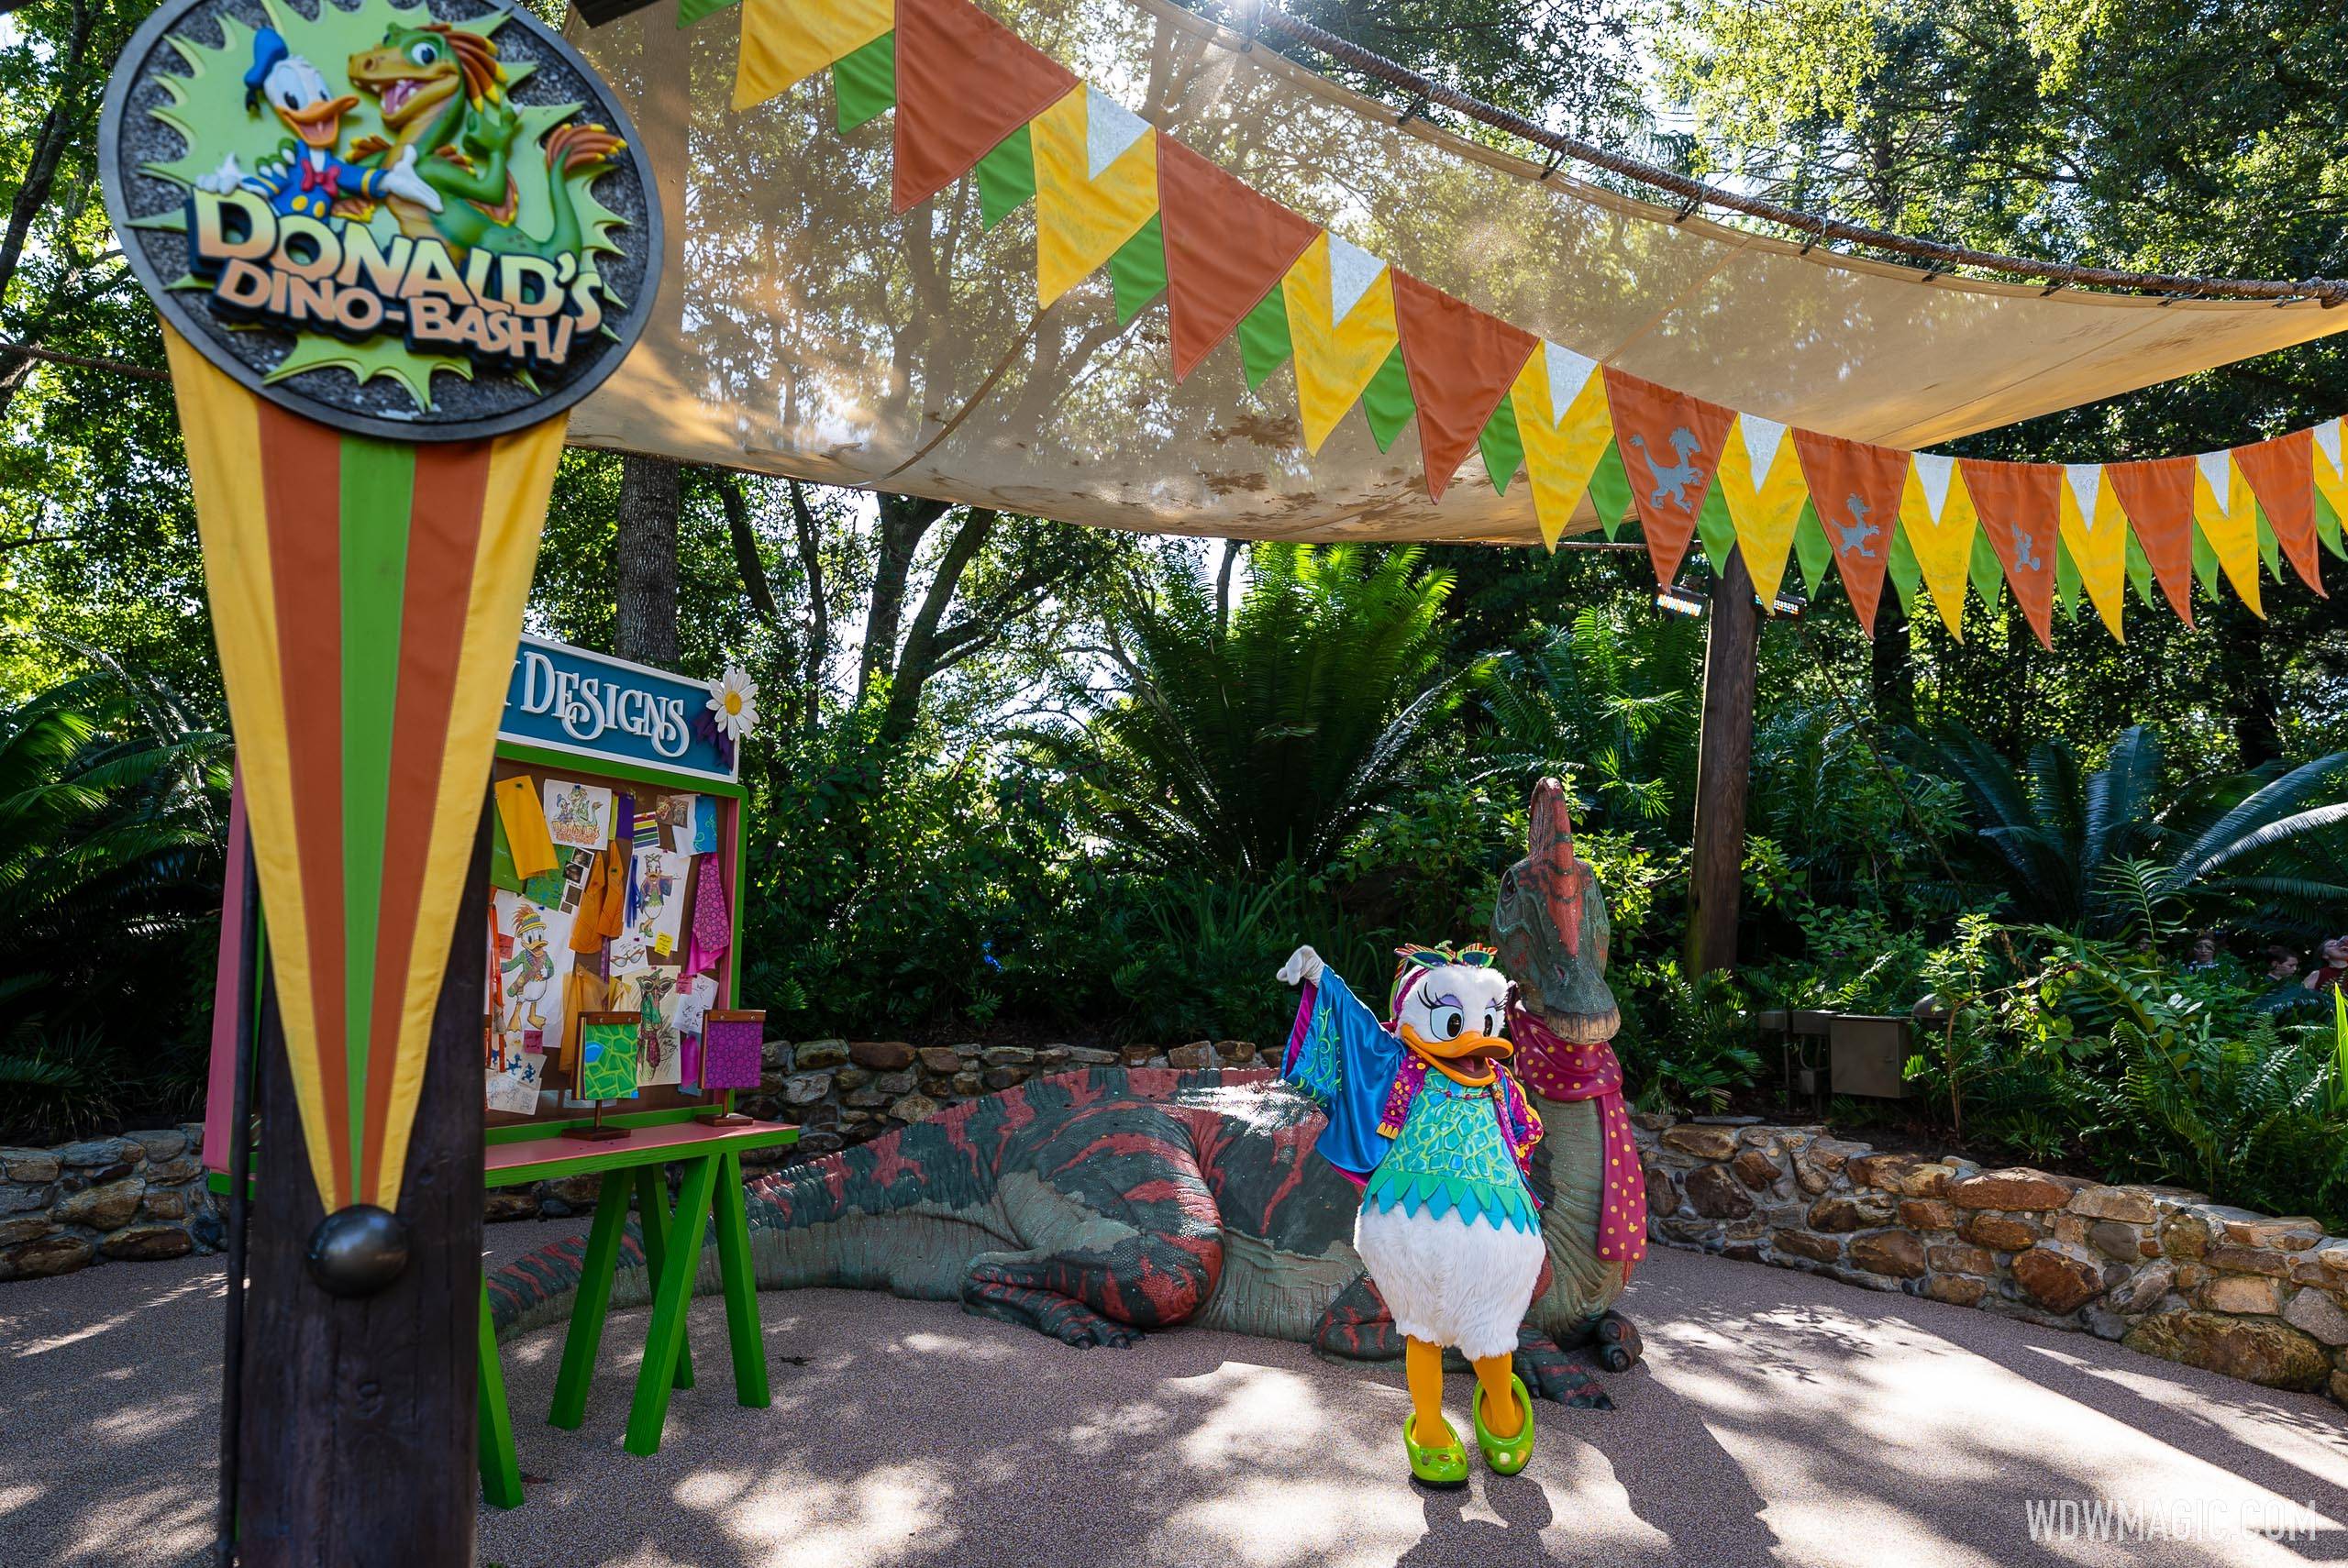 Saiba tudo sobre Donald's Dino-Bash no Animal Kingdom - Pelo Mundo Disney